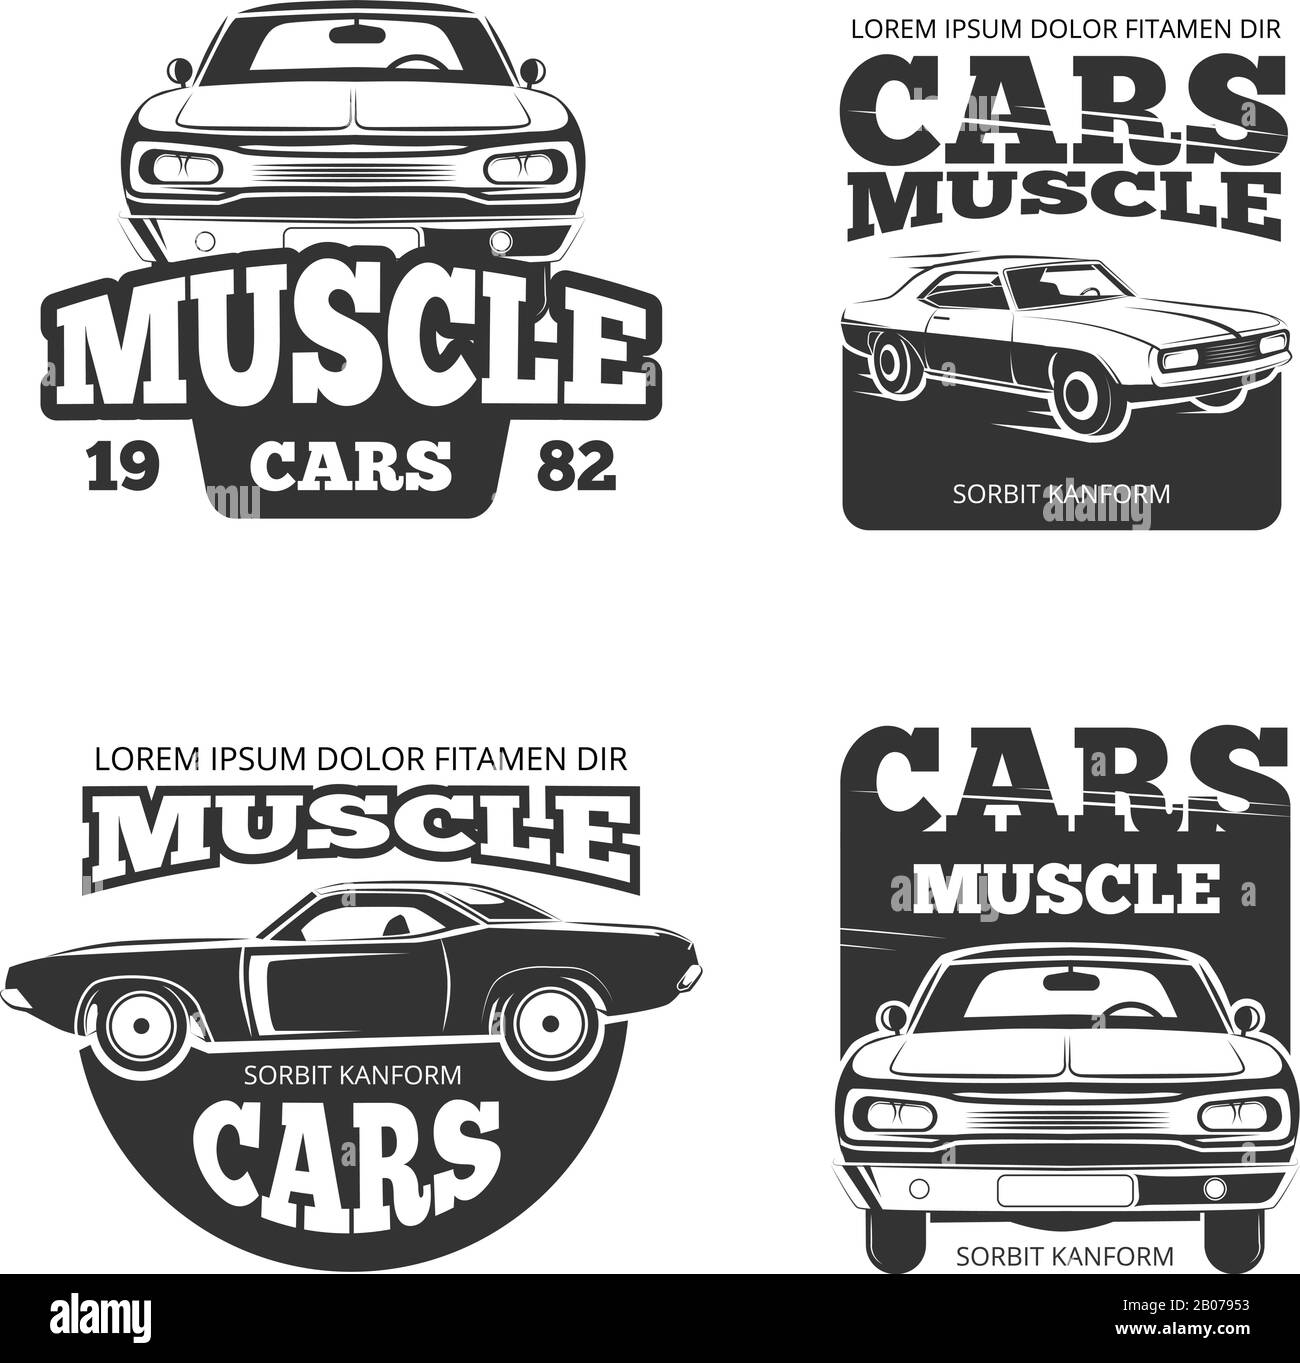 Classico vettore auto muscolare vintage. Modello di etichette, logo, emblemi, badge per l'illustrazione del motore per la manutenzione e il garage Illustrazione Vettoriale